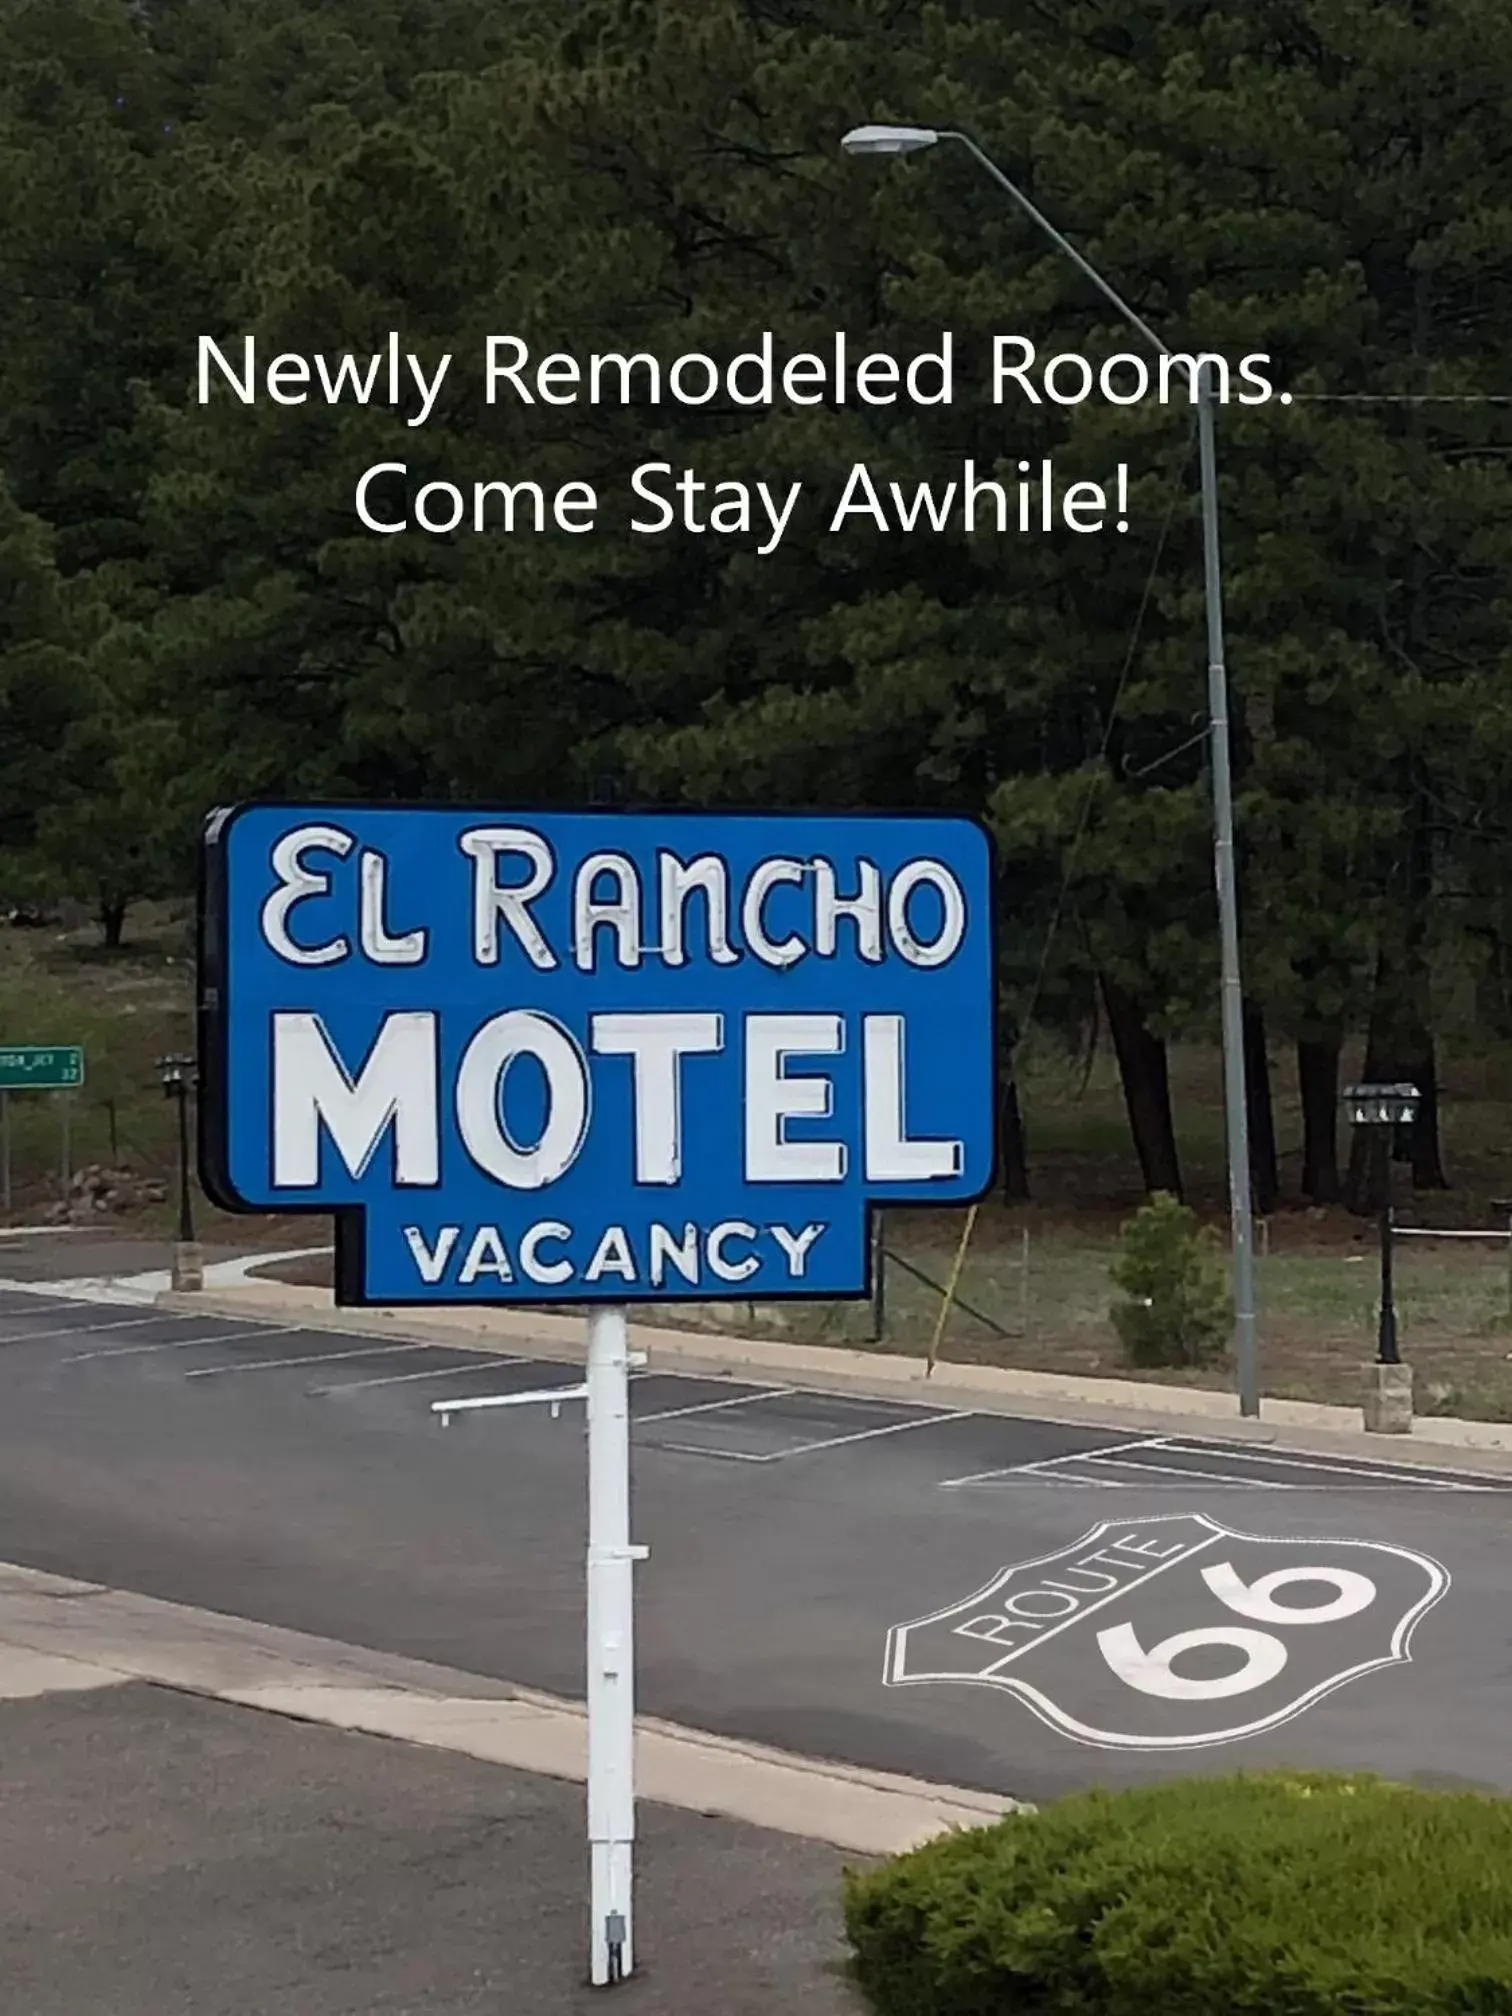 Off site in El Rancho Motel